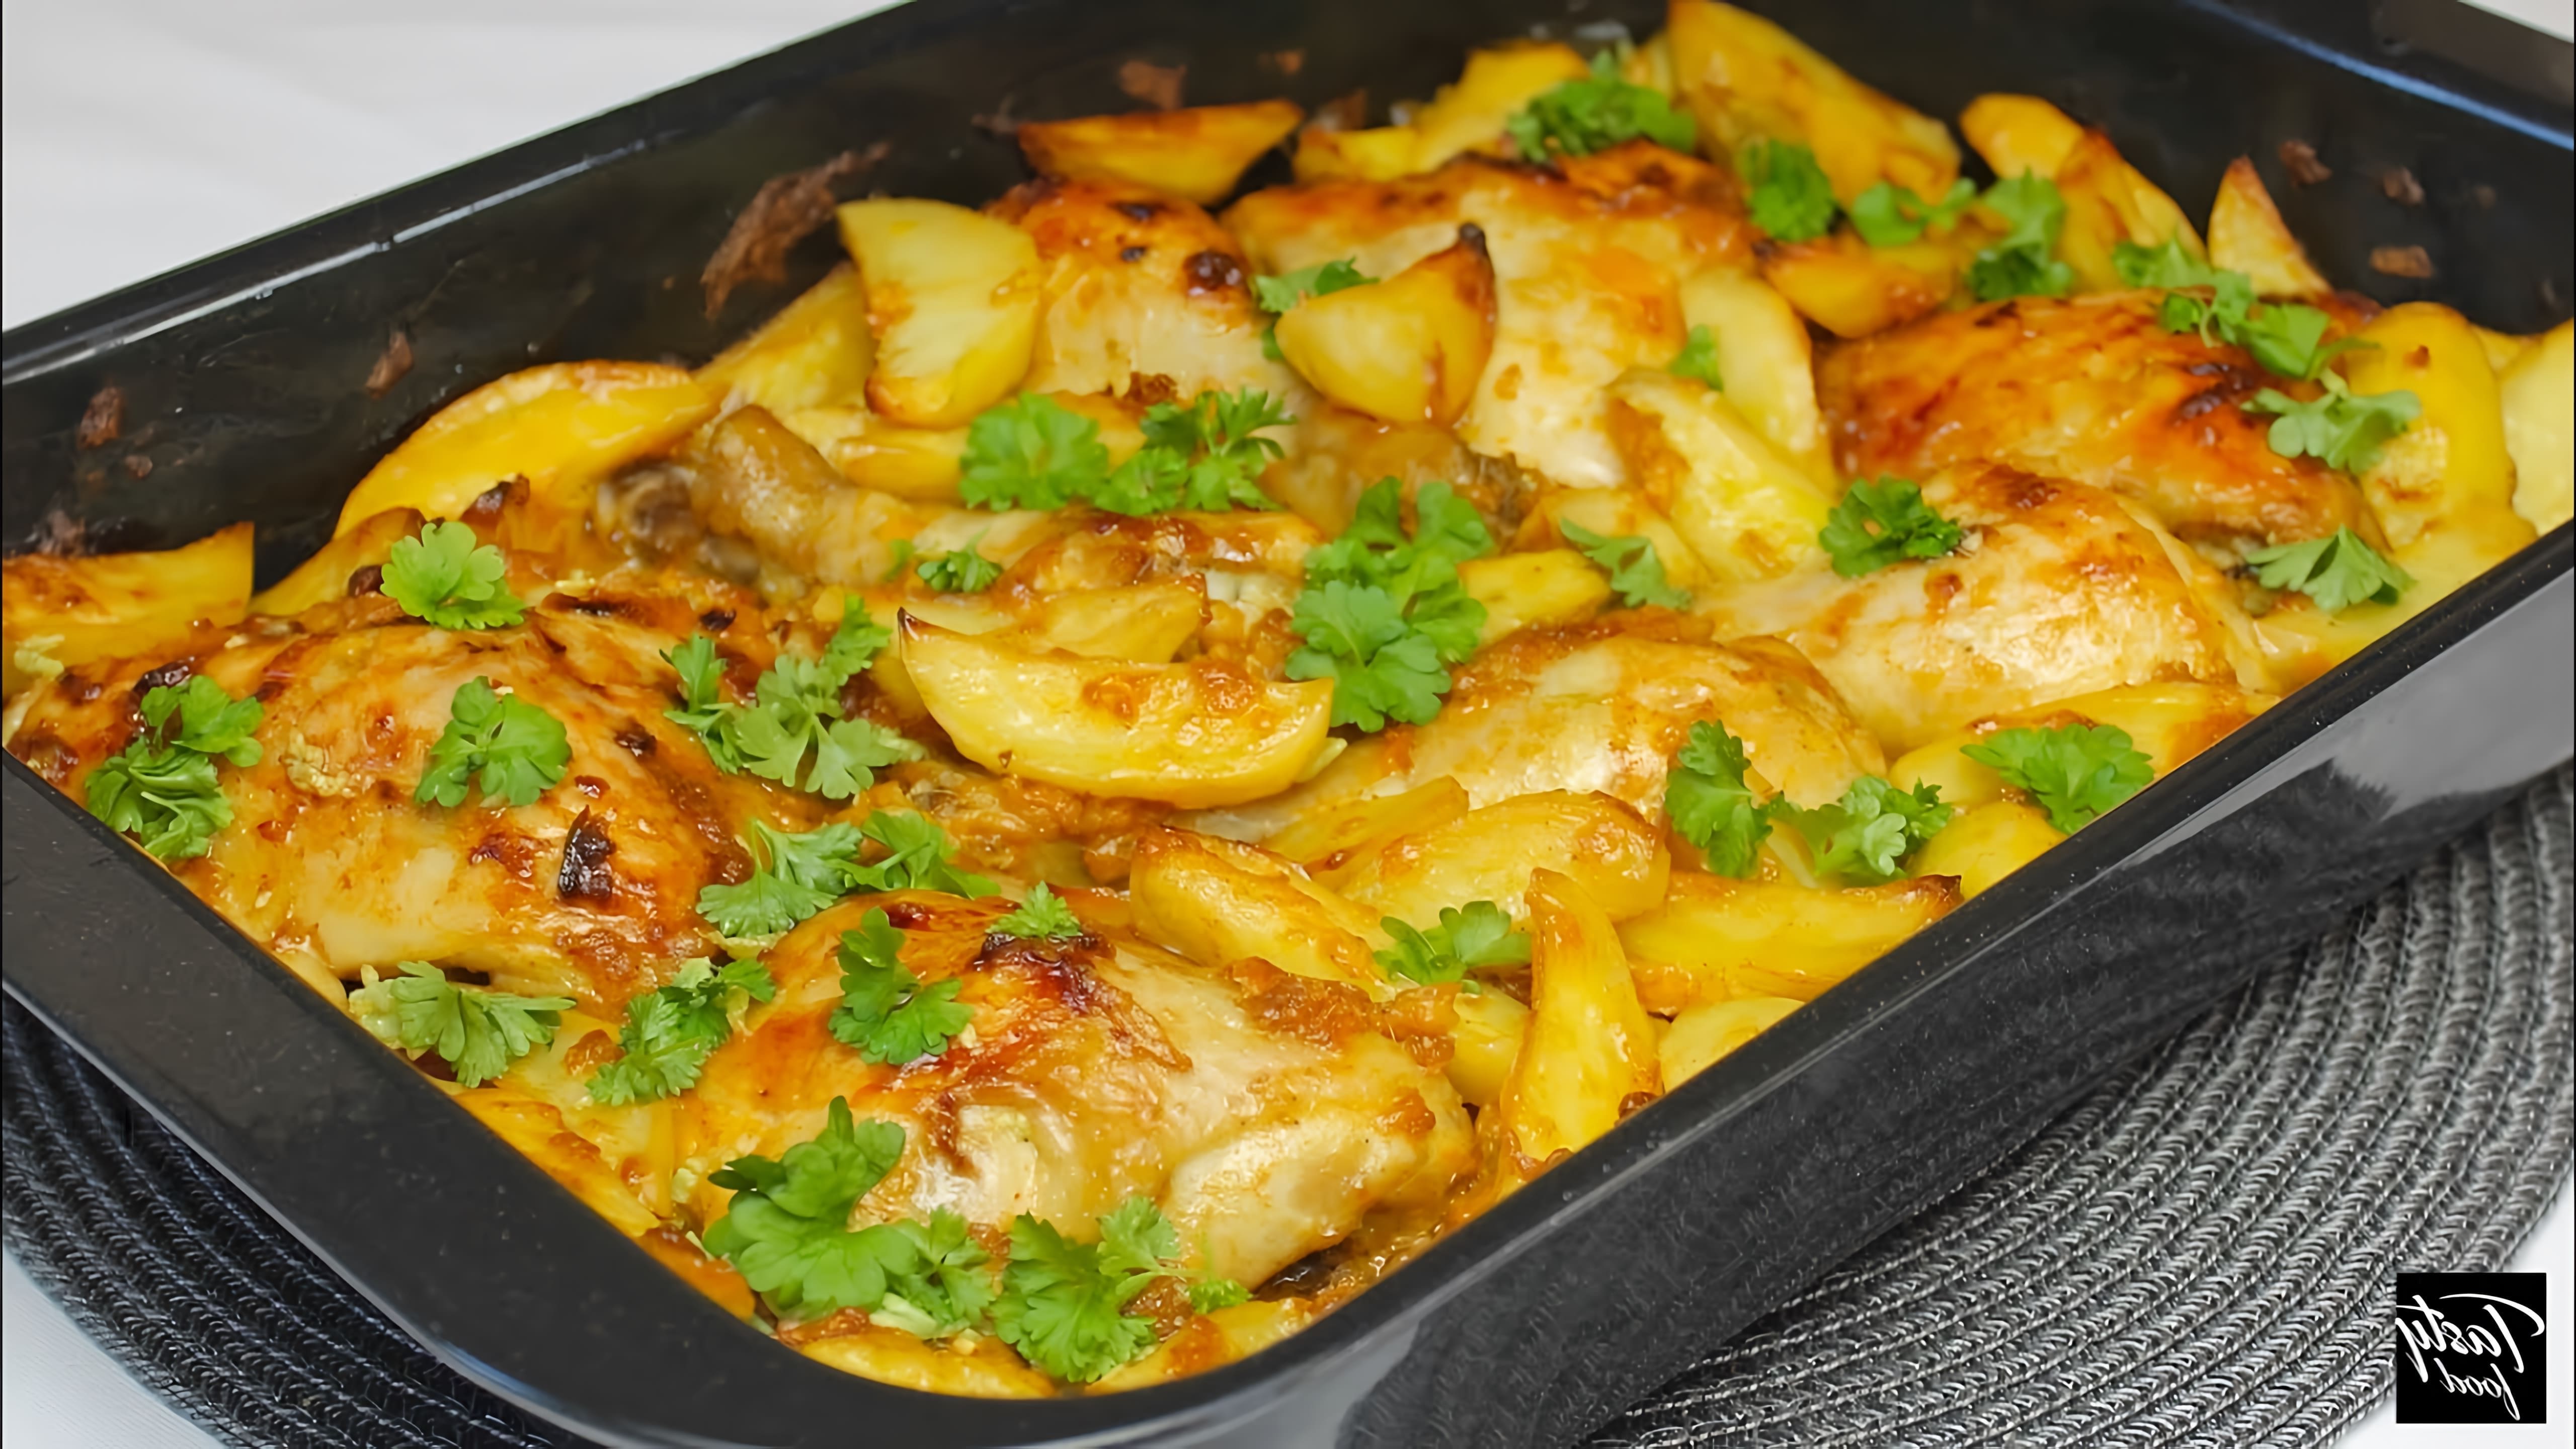 В этом видео демонстрируется рецепт вкусного и сытного ужина в духовке - курица с картошкой в обалденном маринаде